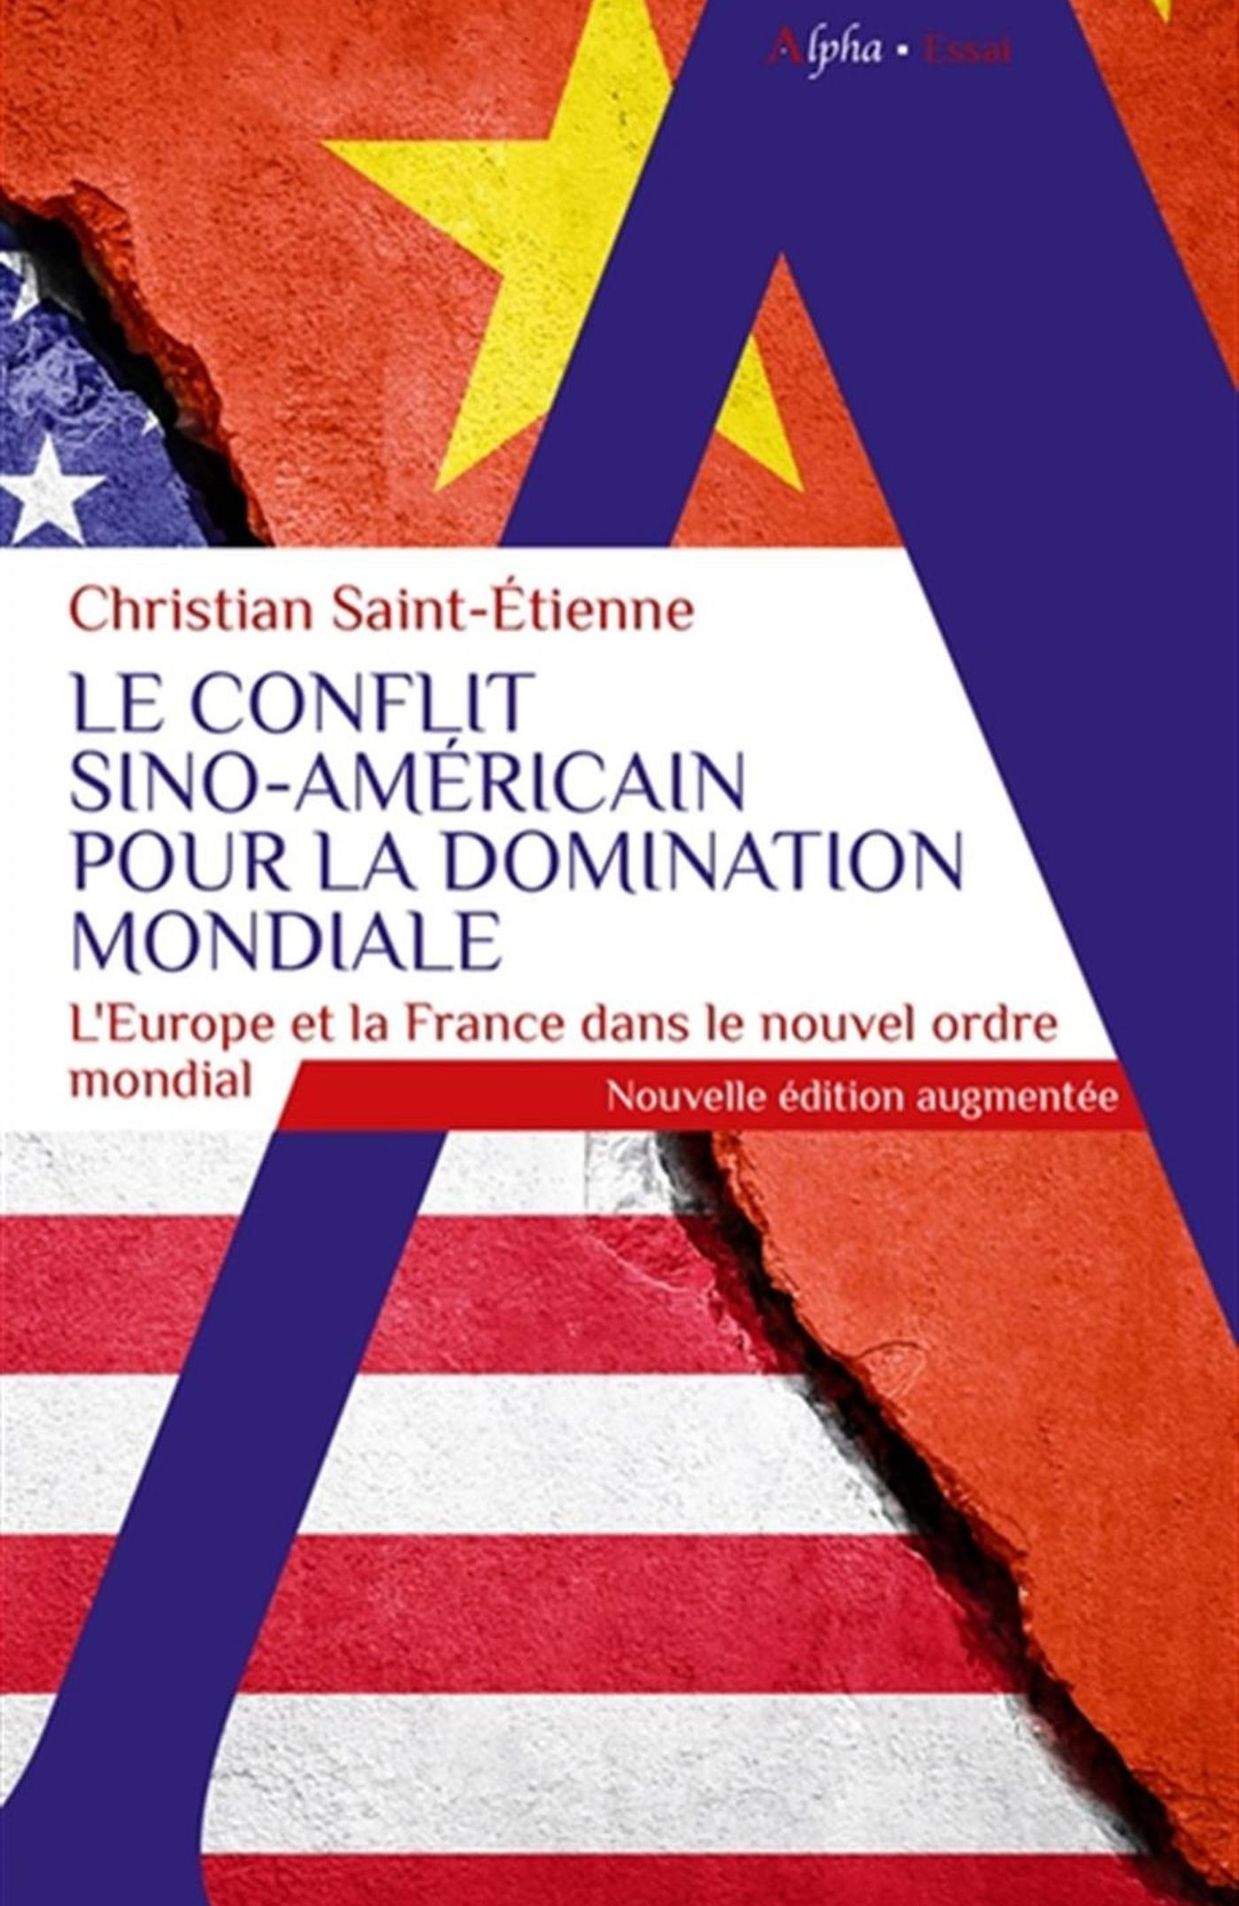 Le conflit sino-américain pour la domination mondiale, Christian Saint Etienne